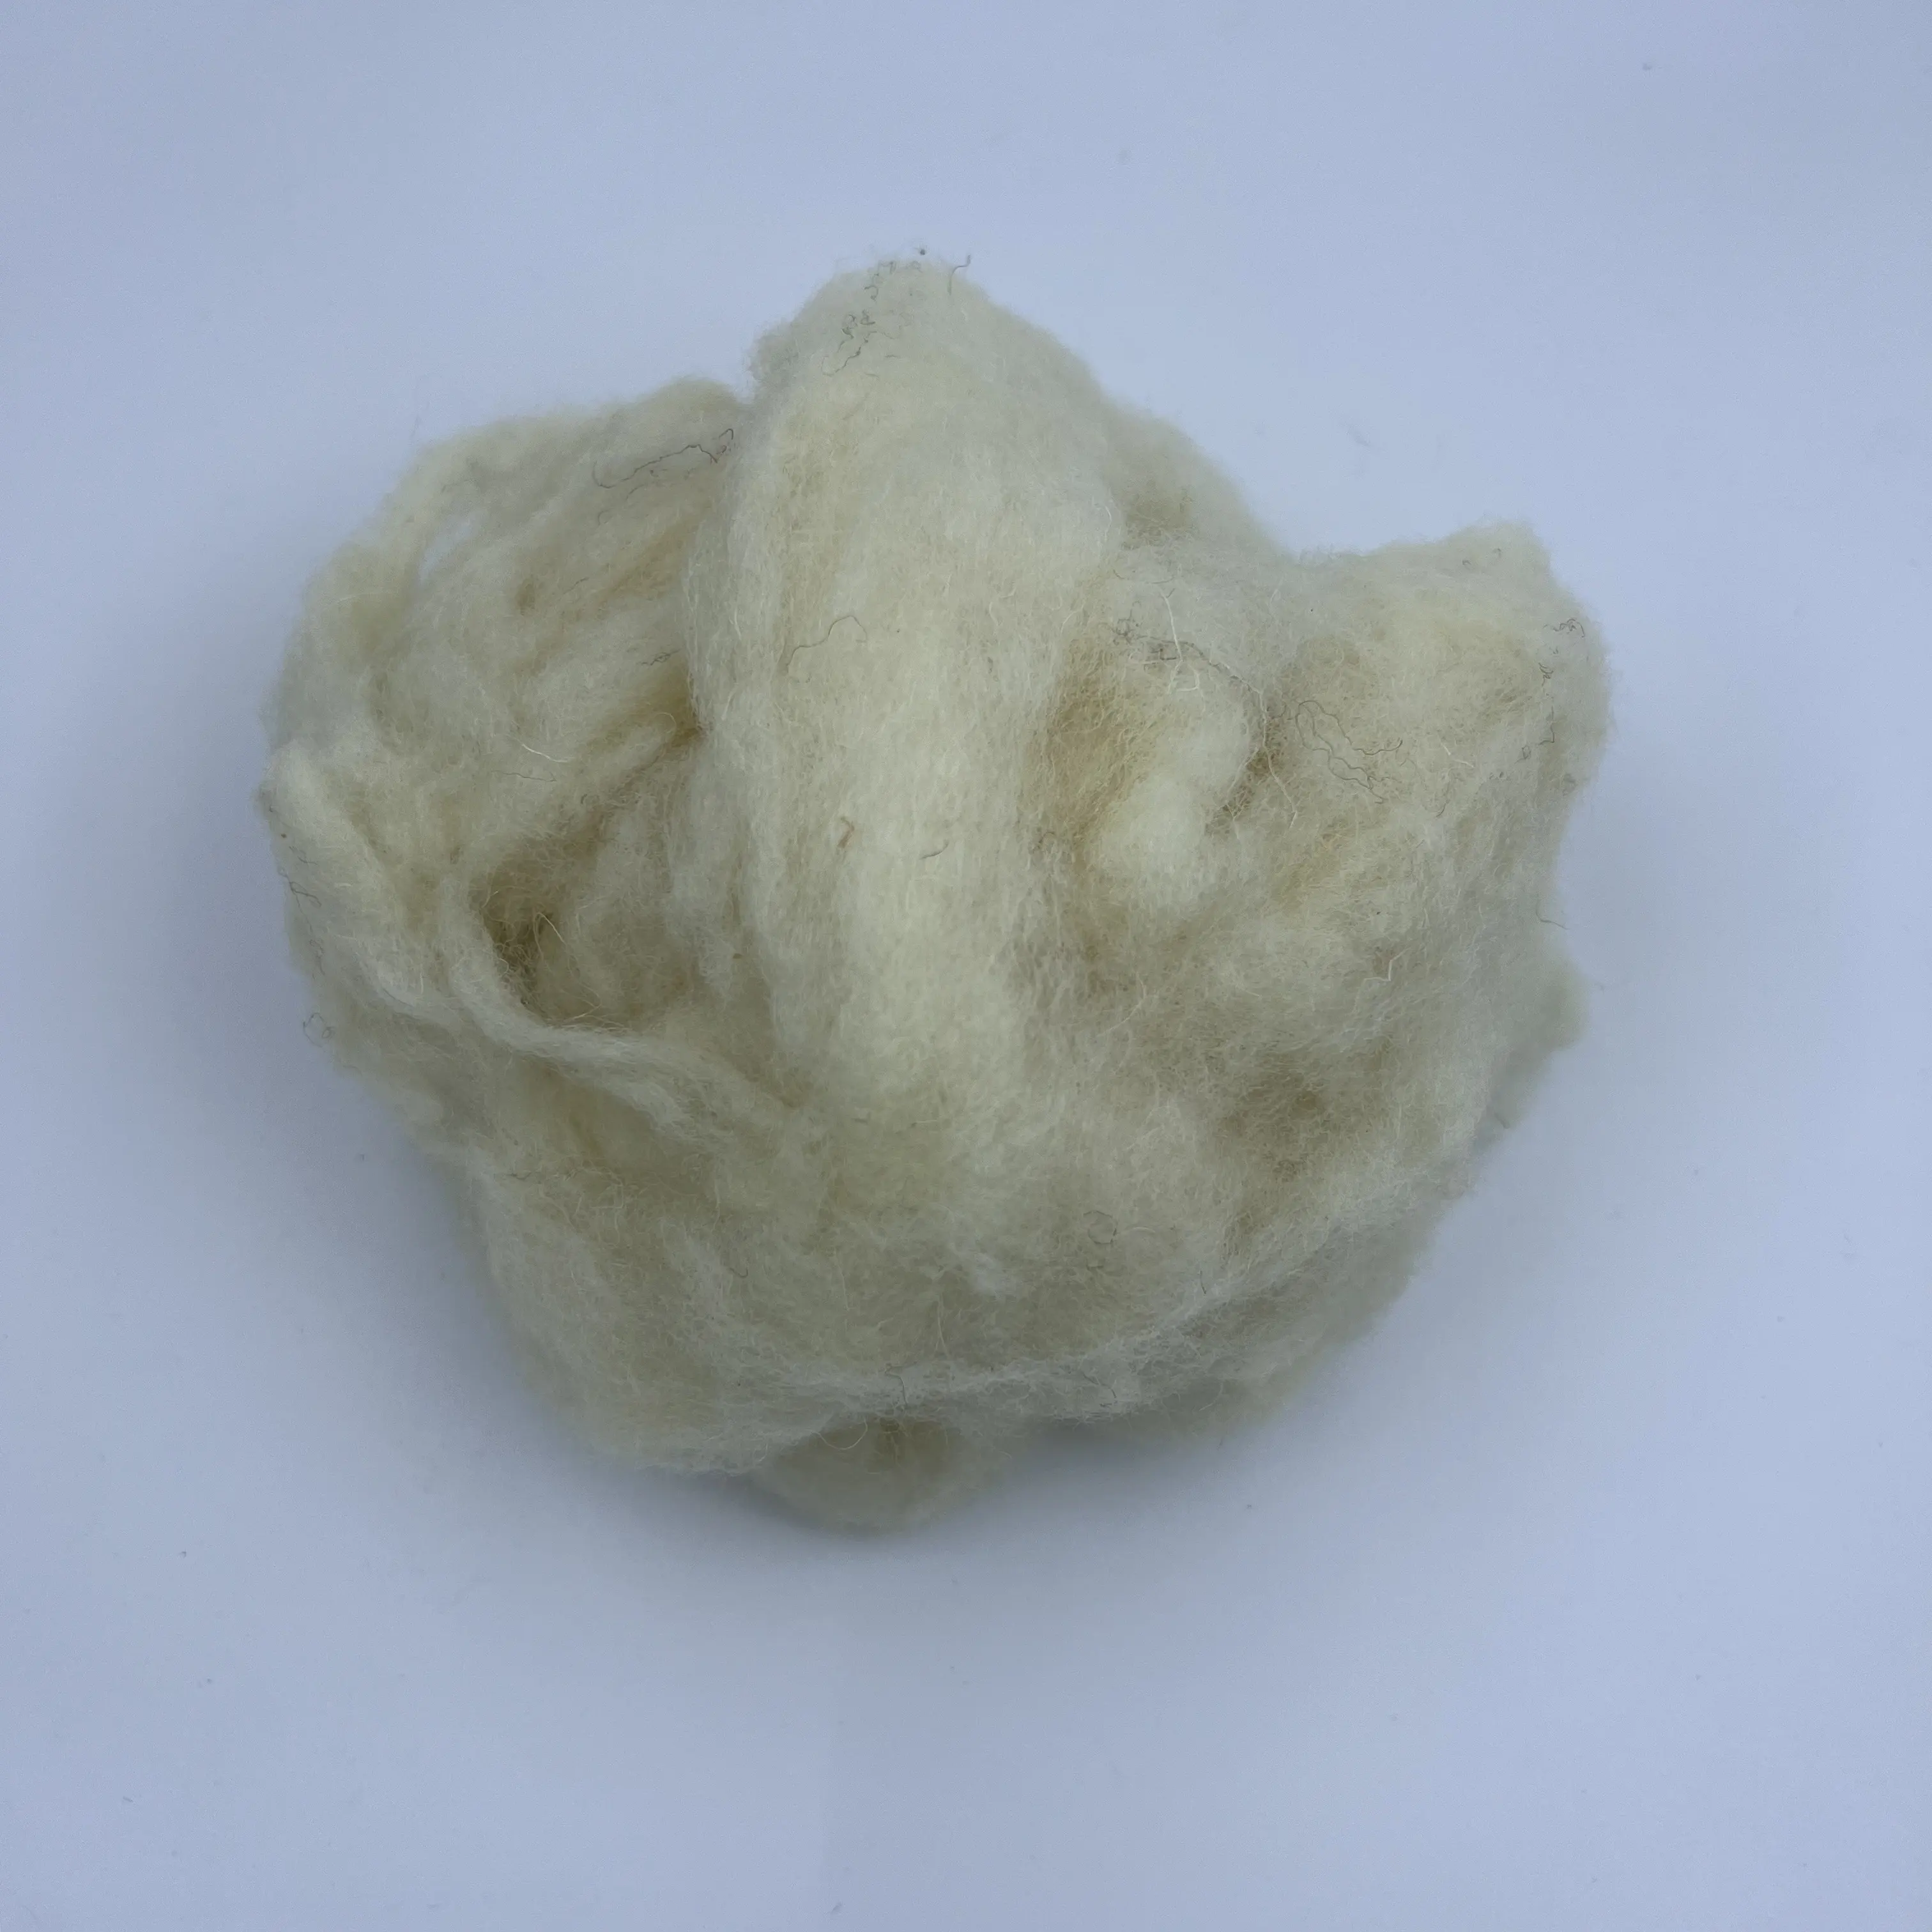 विशेष ऊन, कश्मीरी भरने वाली उच्च गुणवत्ता वाली रजाई की कीमत में छूट